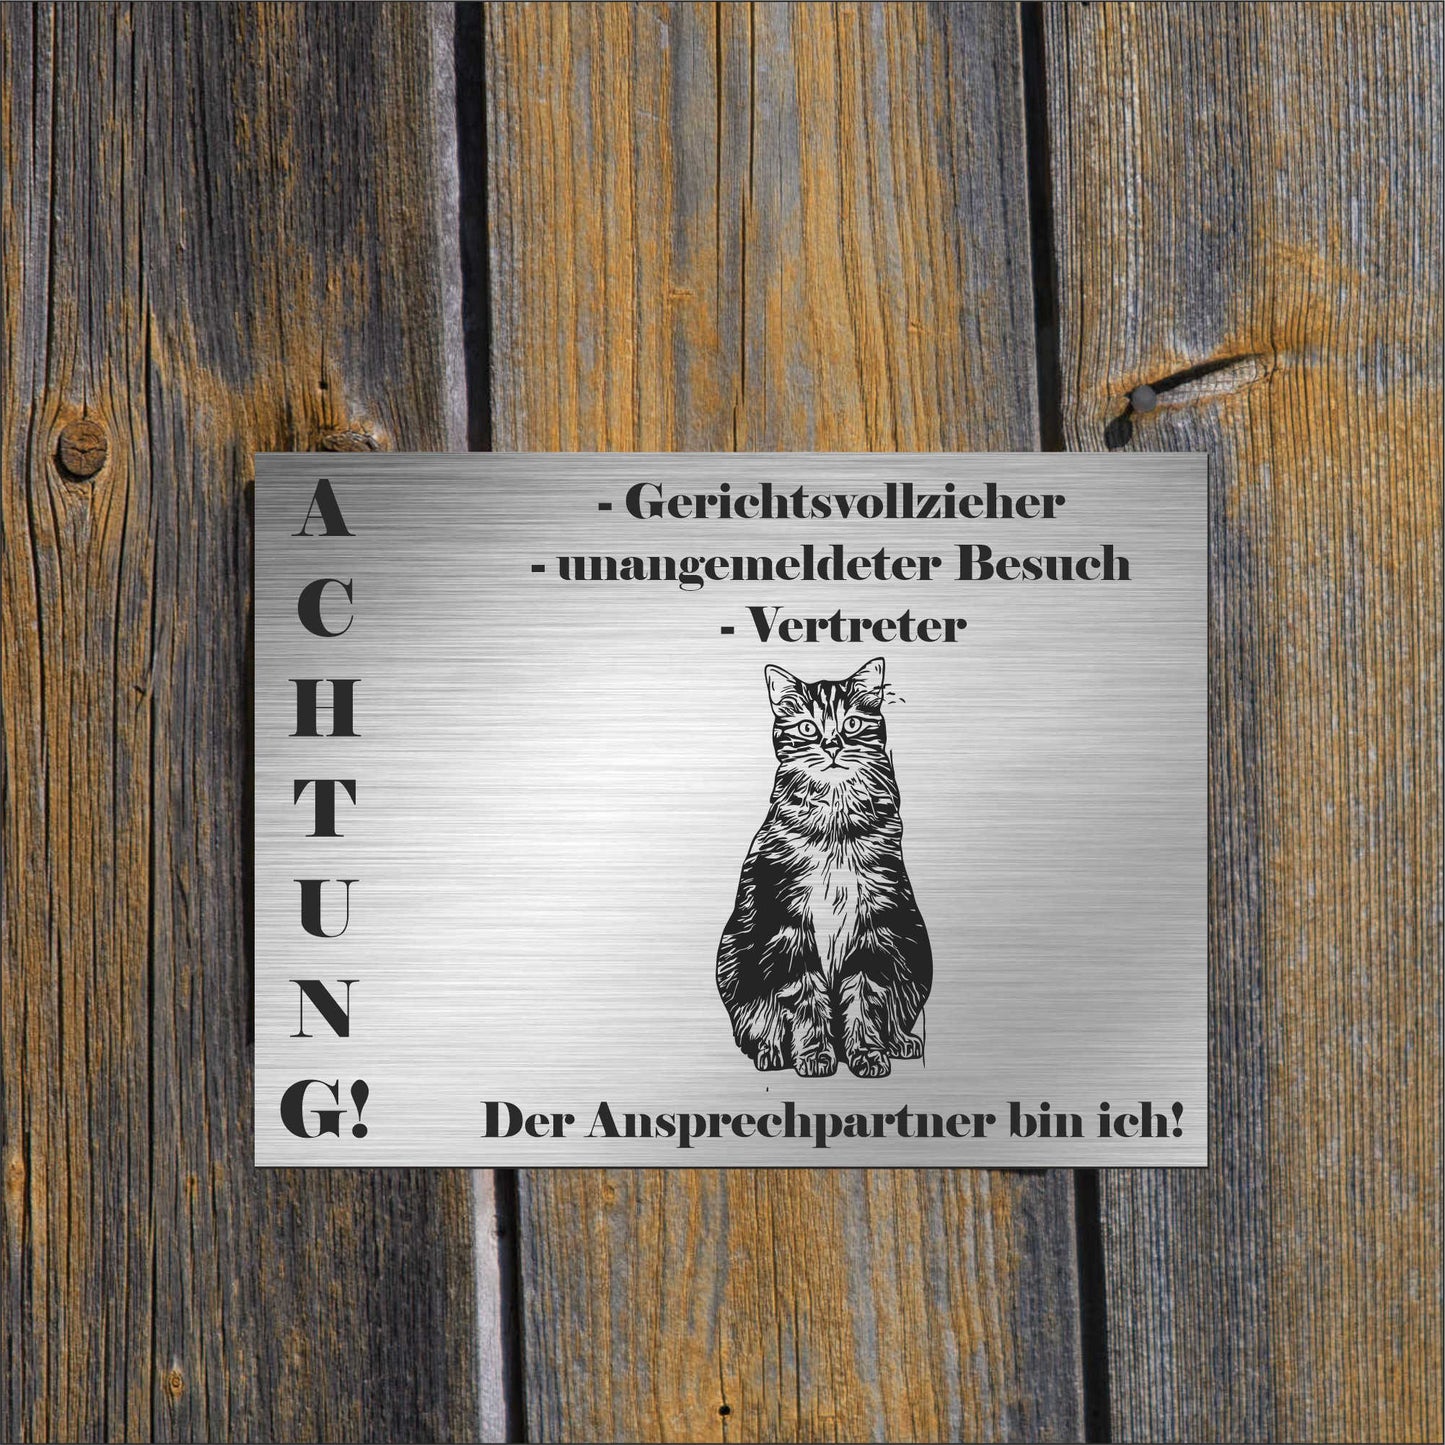 Lykoi Katze - Schild bedruckt - Spruch - Deko Geschenkidee